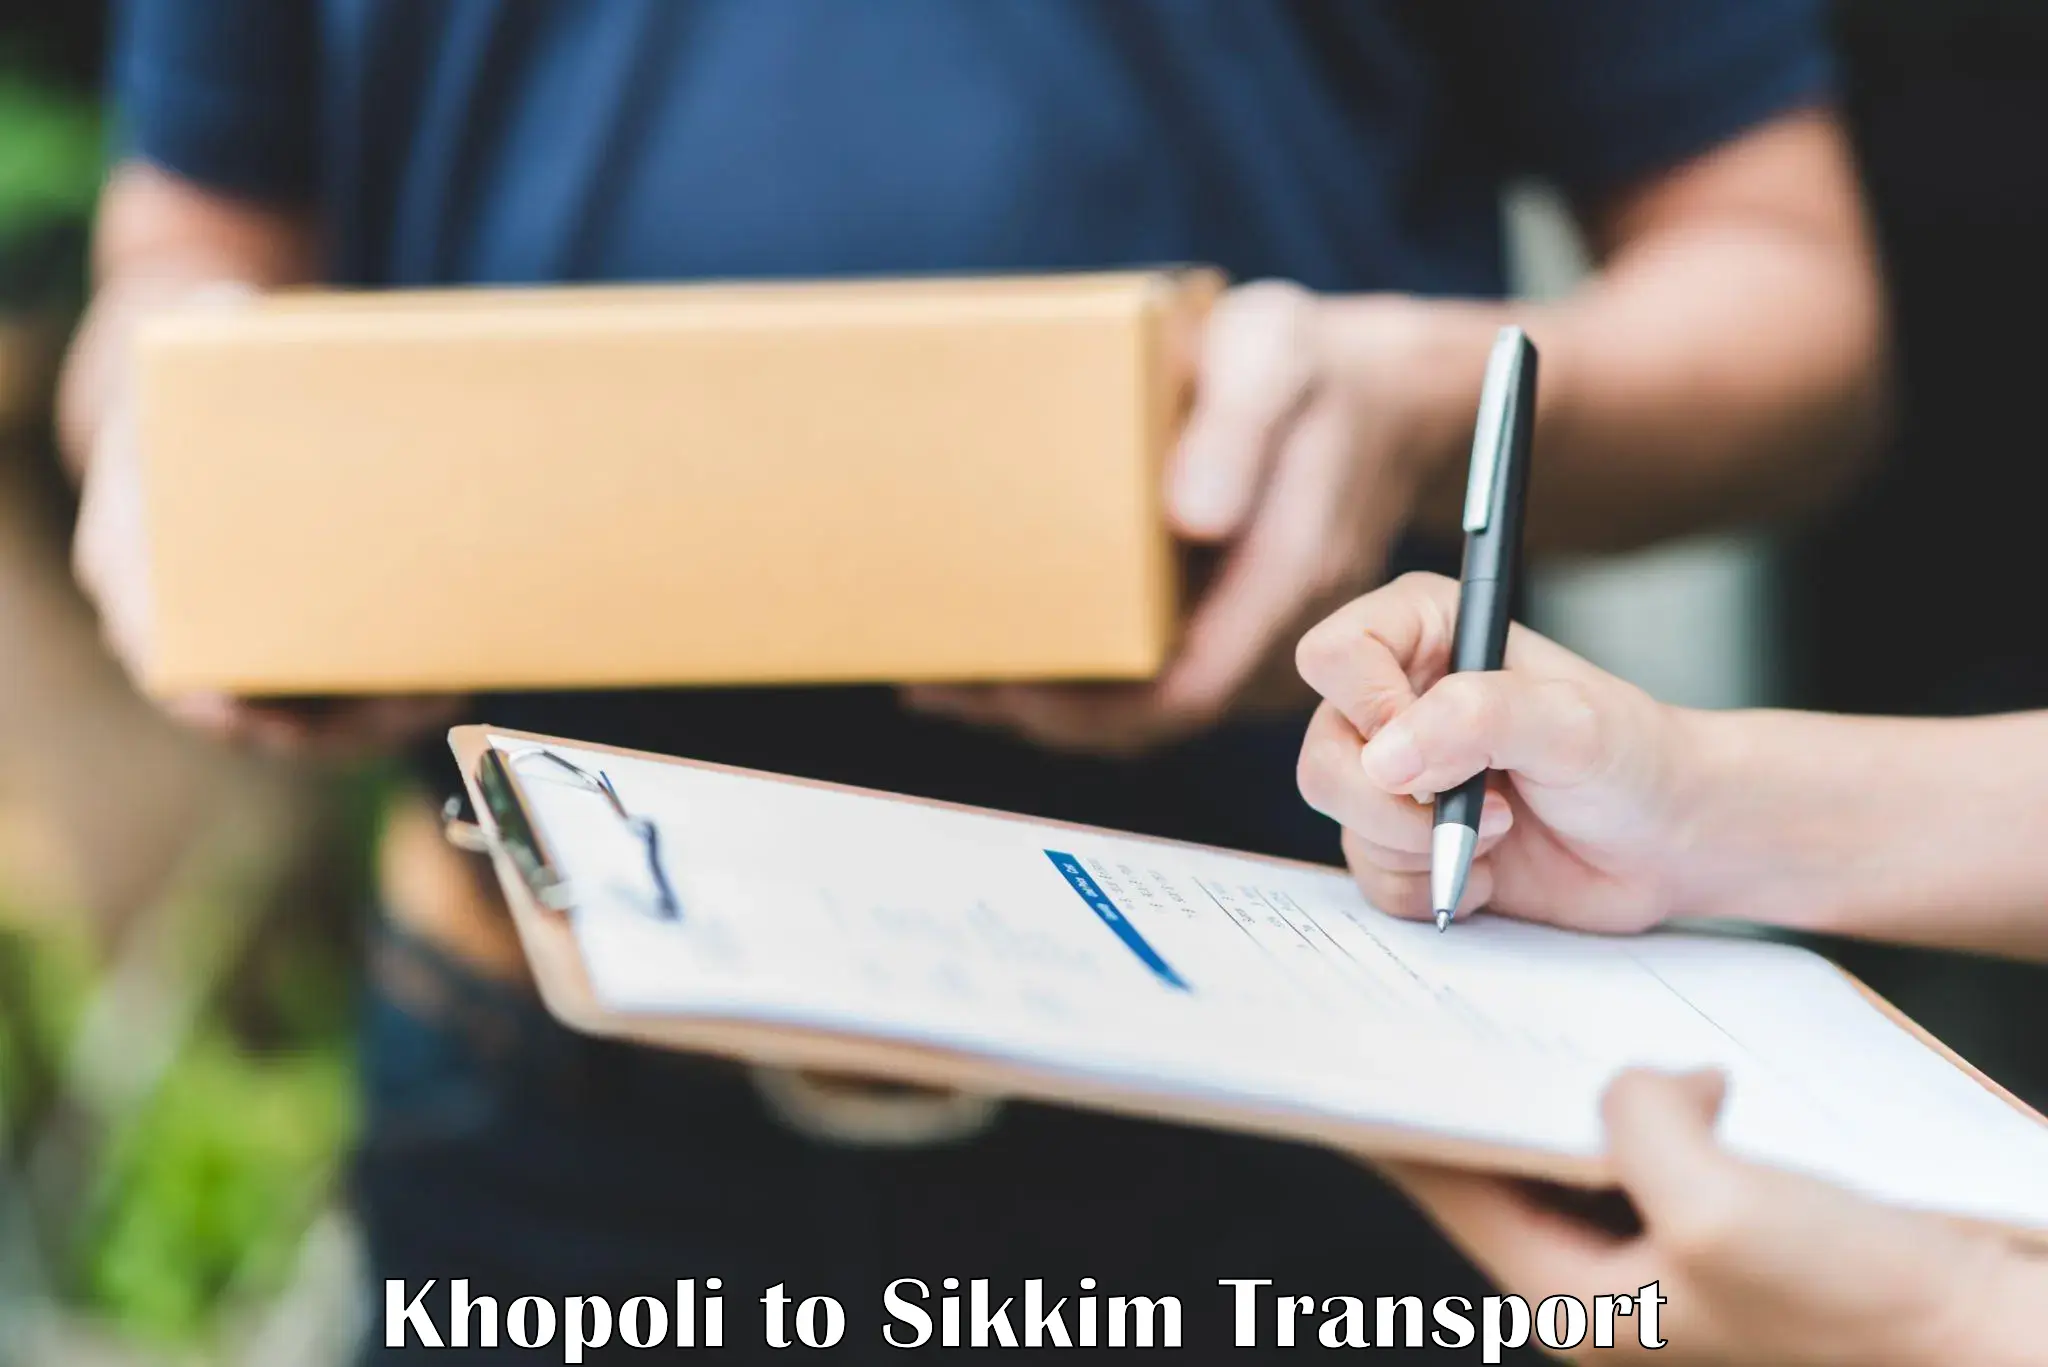 Nationwide transport services Khopoli to Namchi